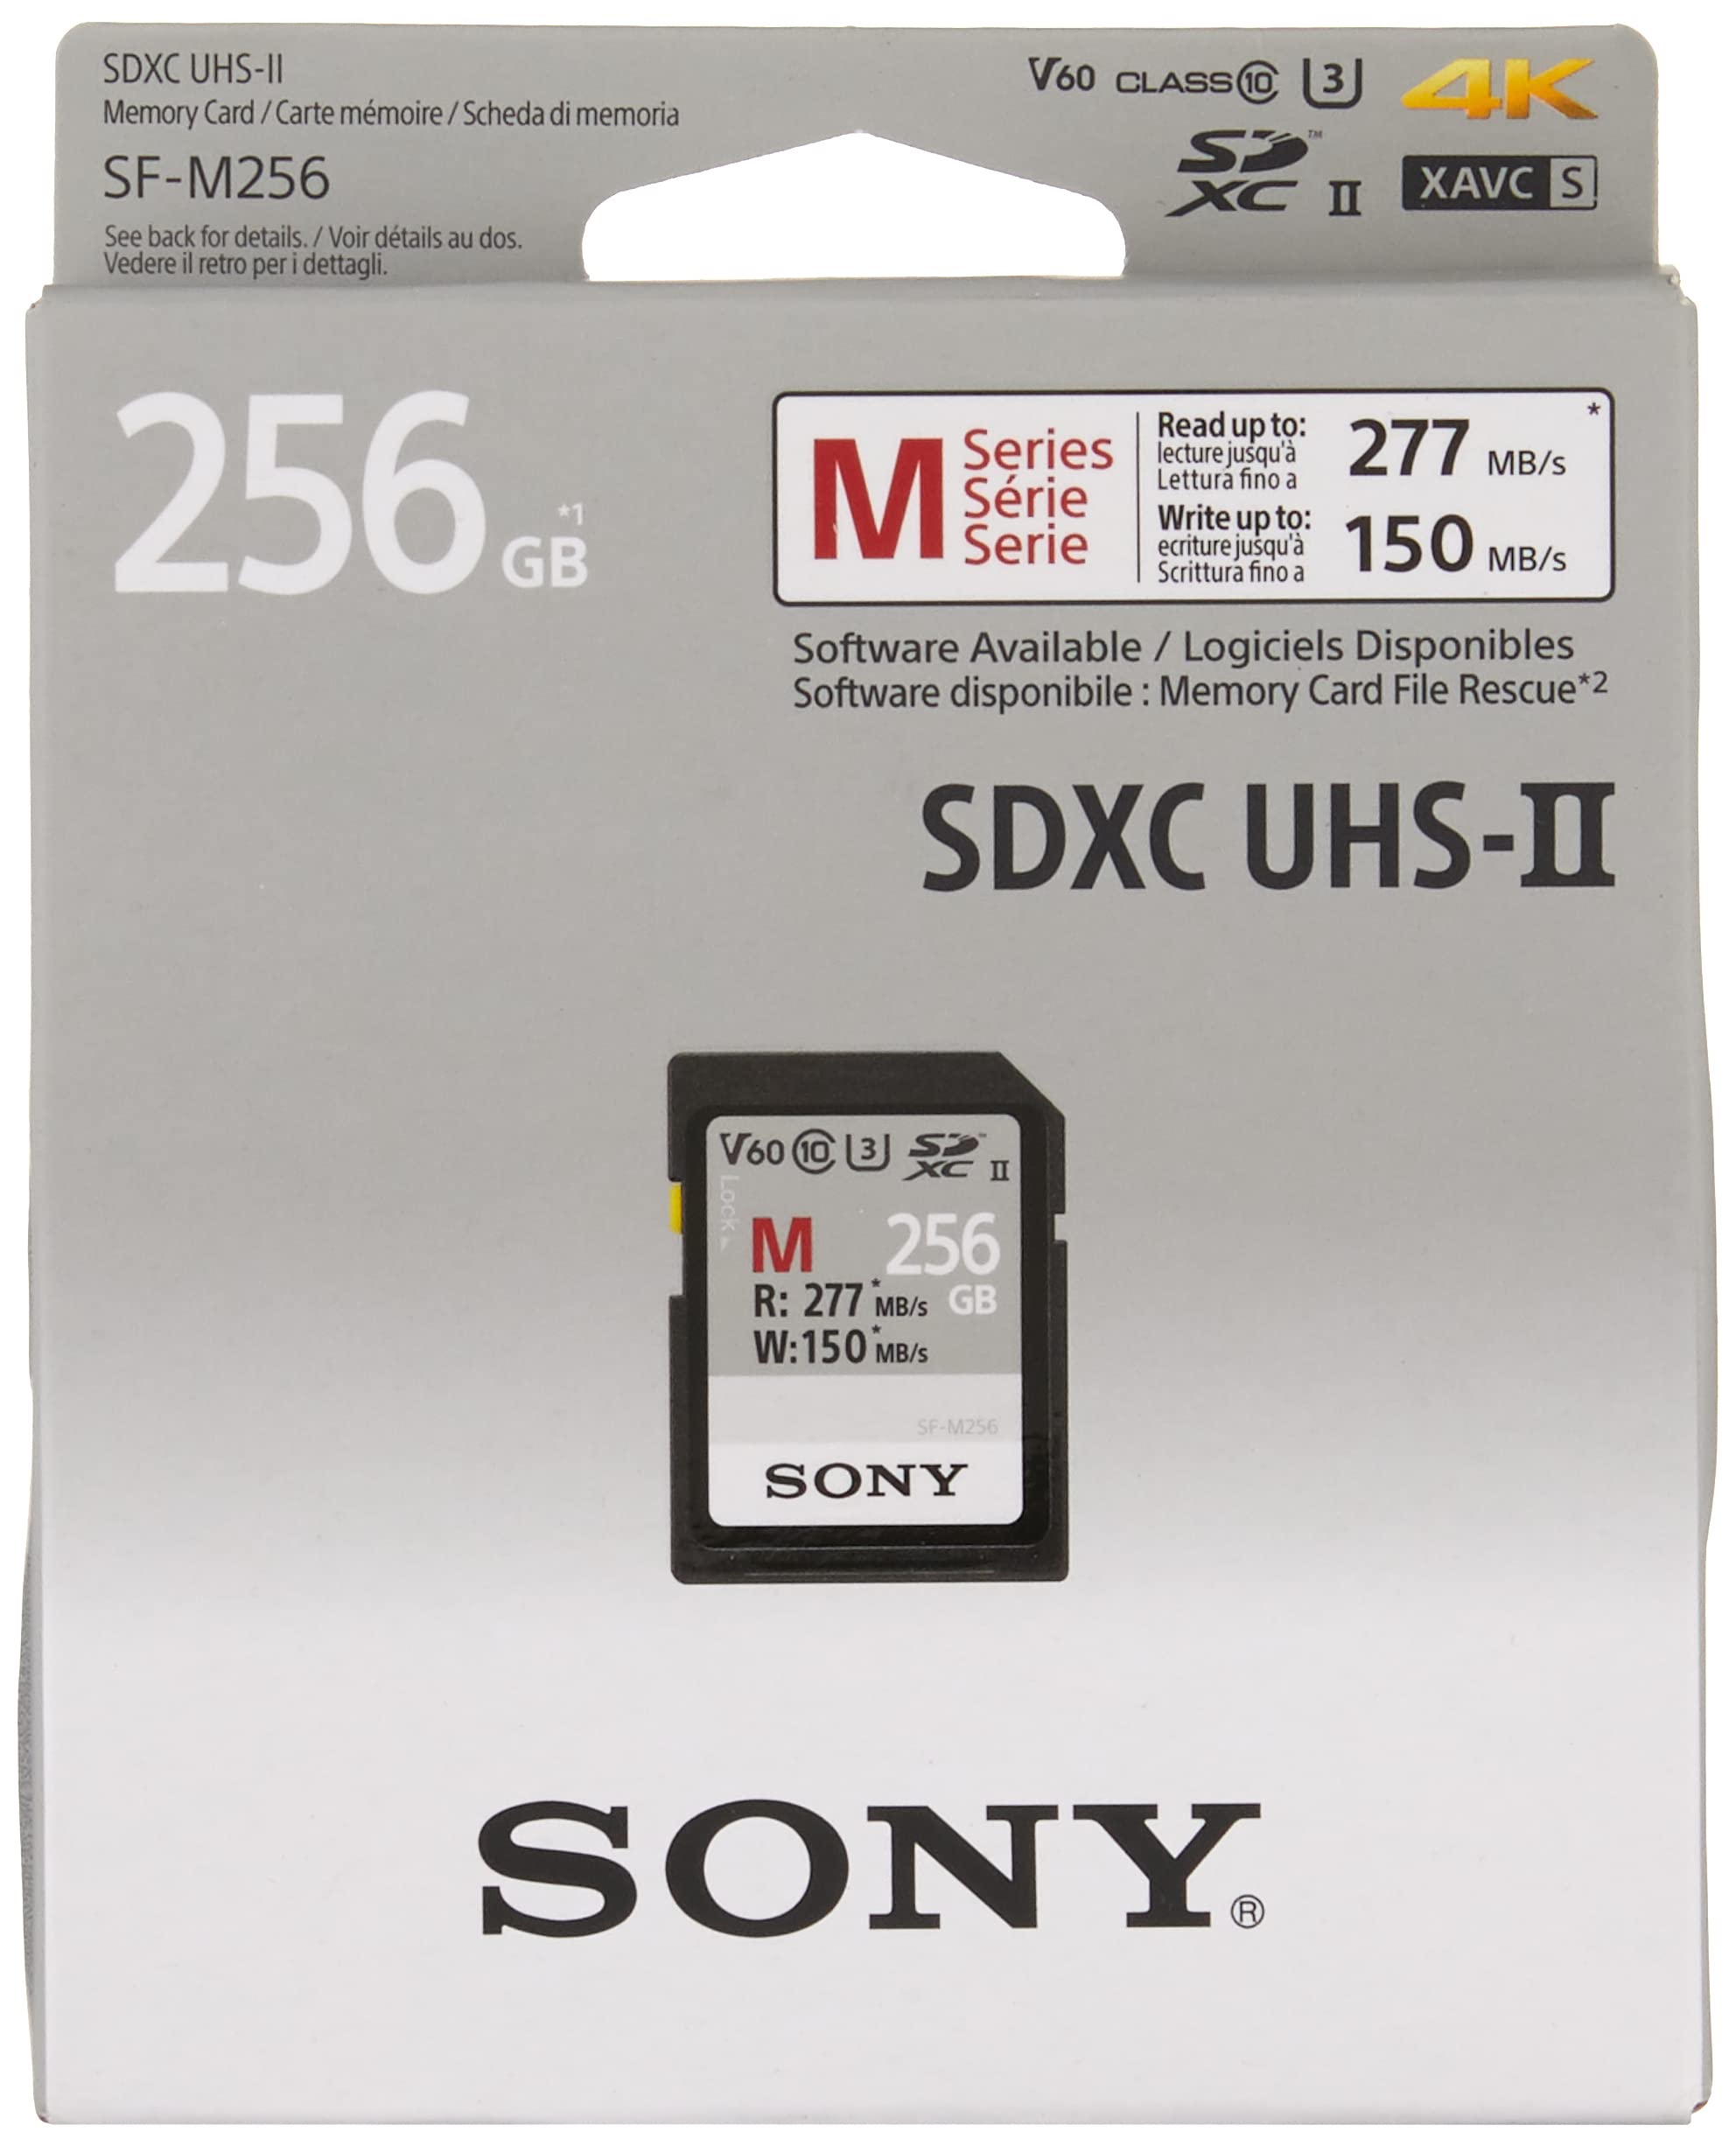 Sony SDXC UHS-II Speicherkarte mit 256GB, Schreiben mit 277 MB/s, 4k Video, IP 57, SFM256